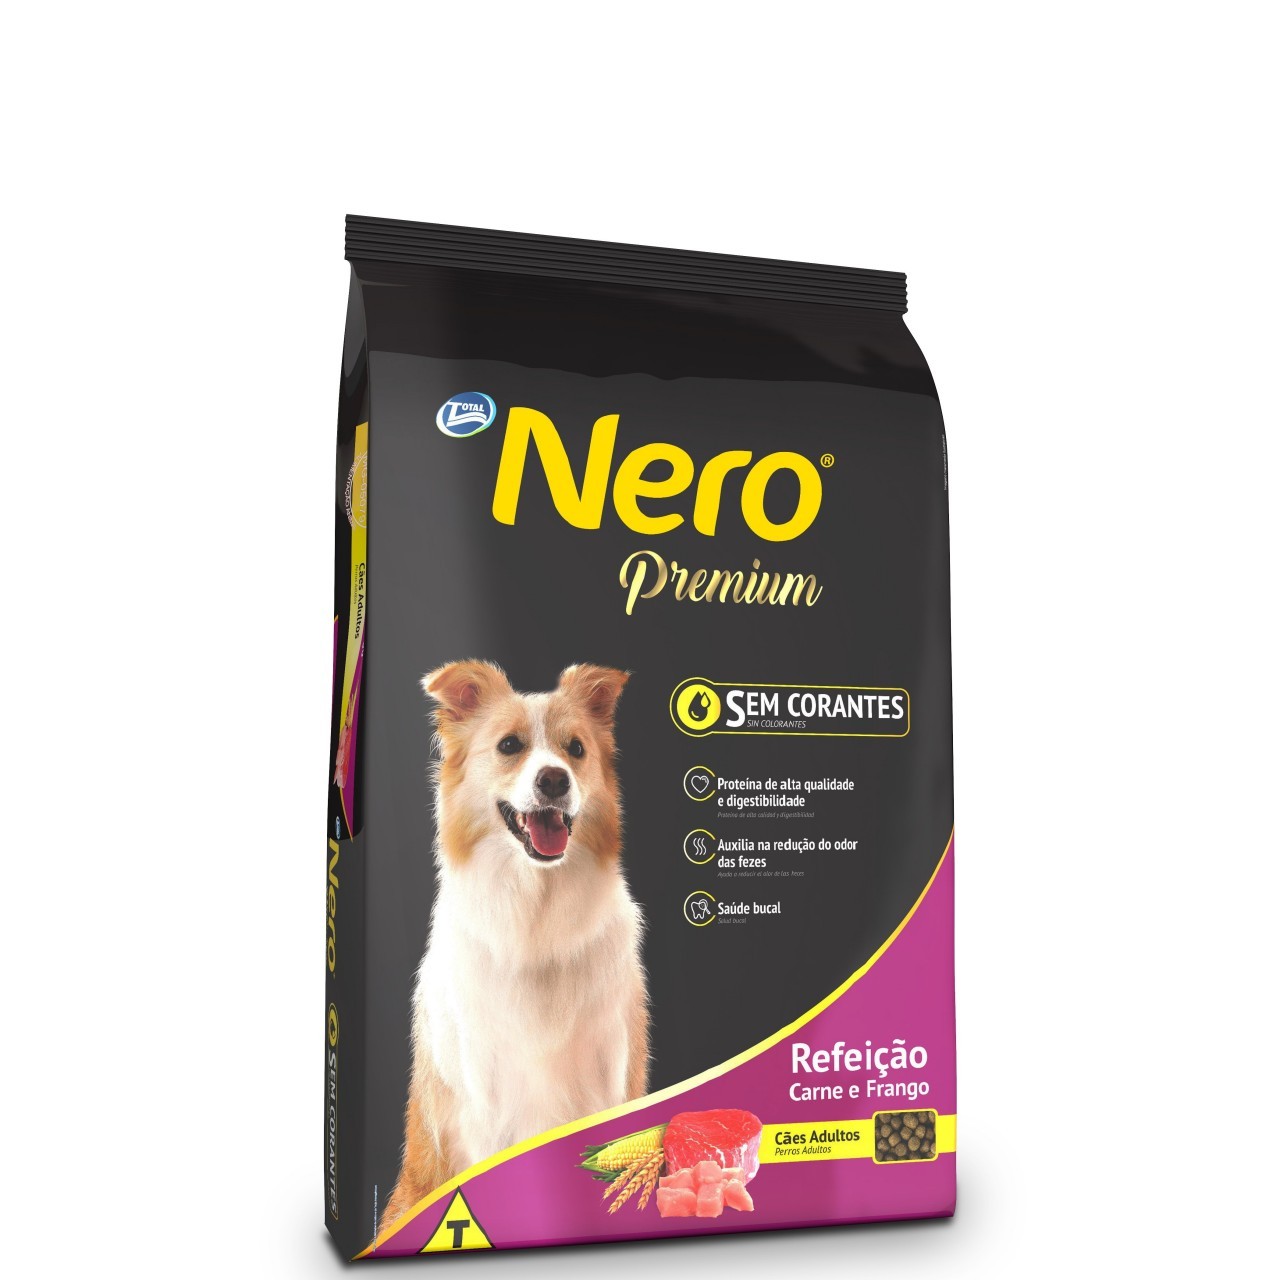 NERO PREMIUM ADULT DOG FOOD 10.1kg